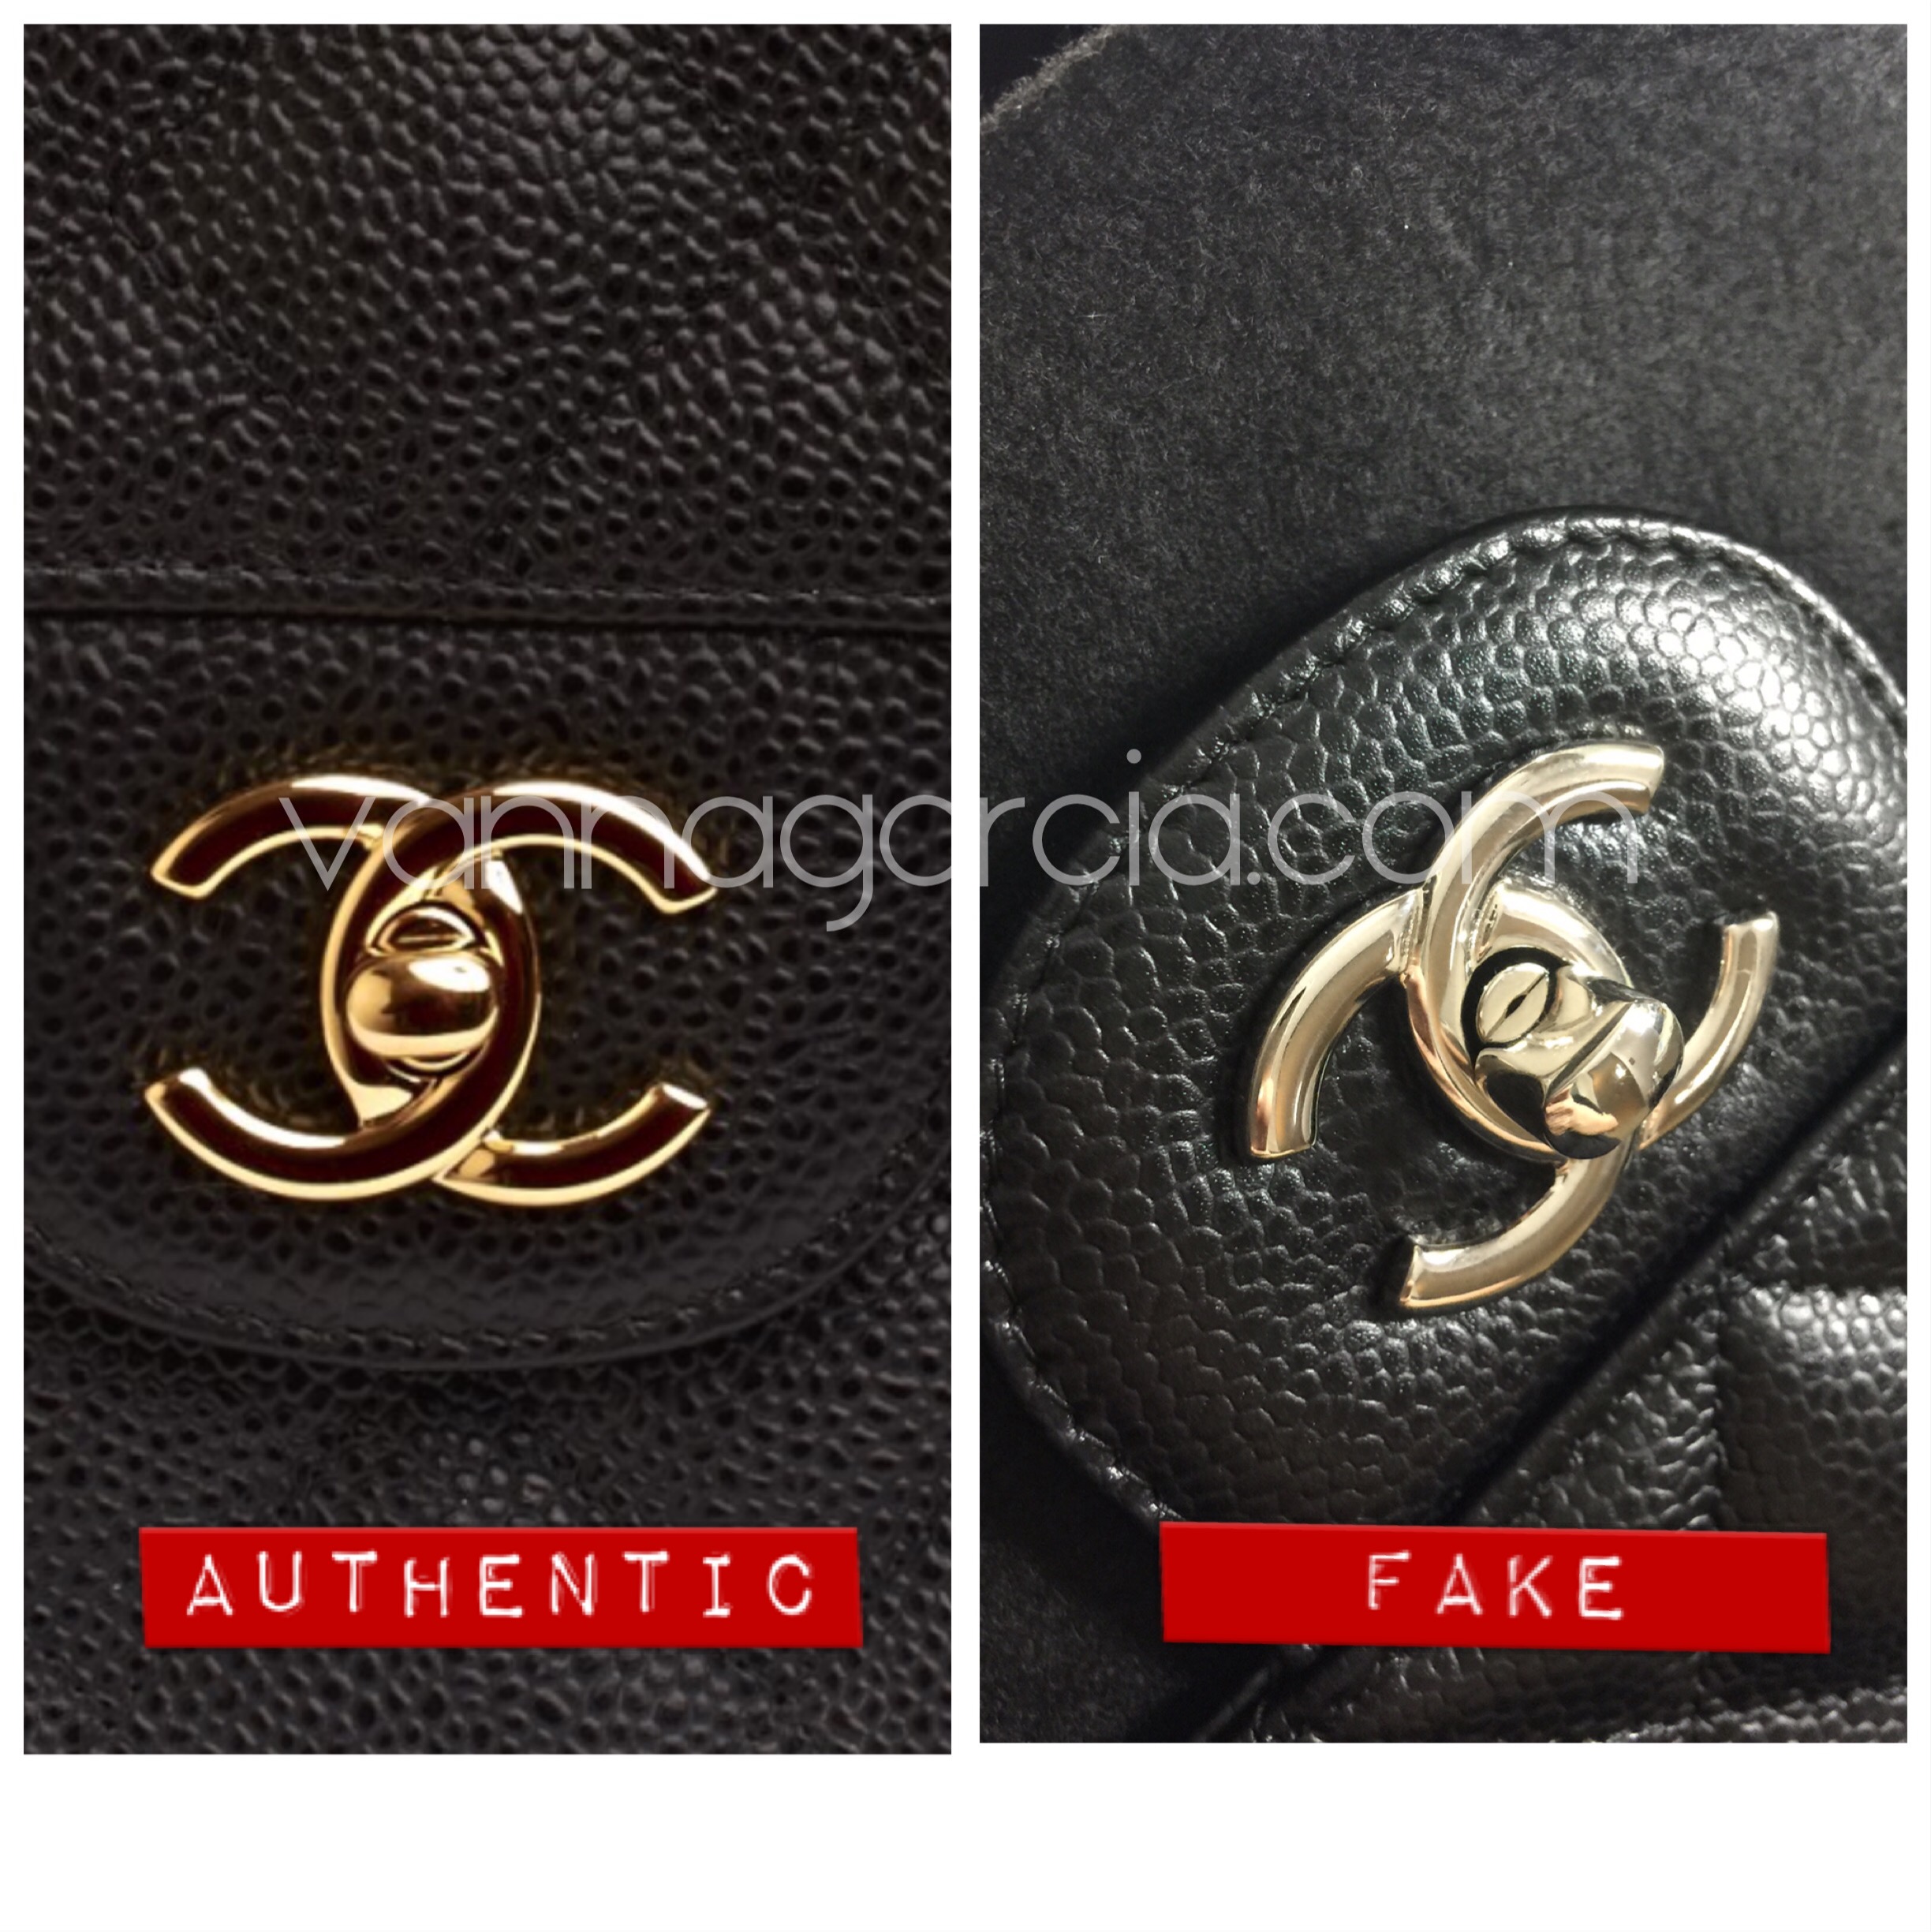 chanel bag fake vs real